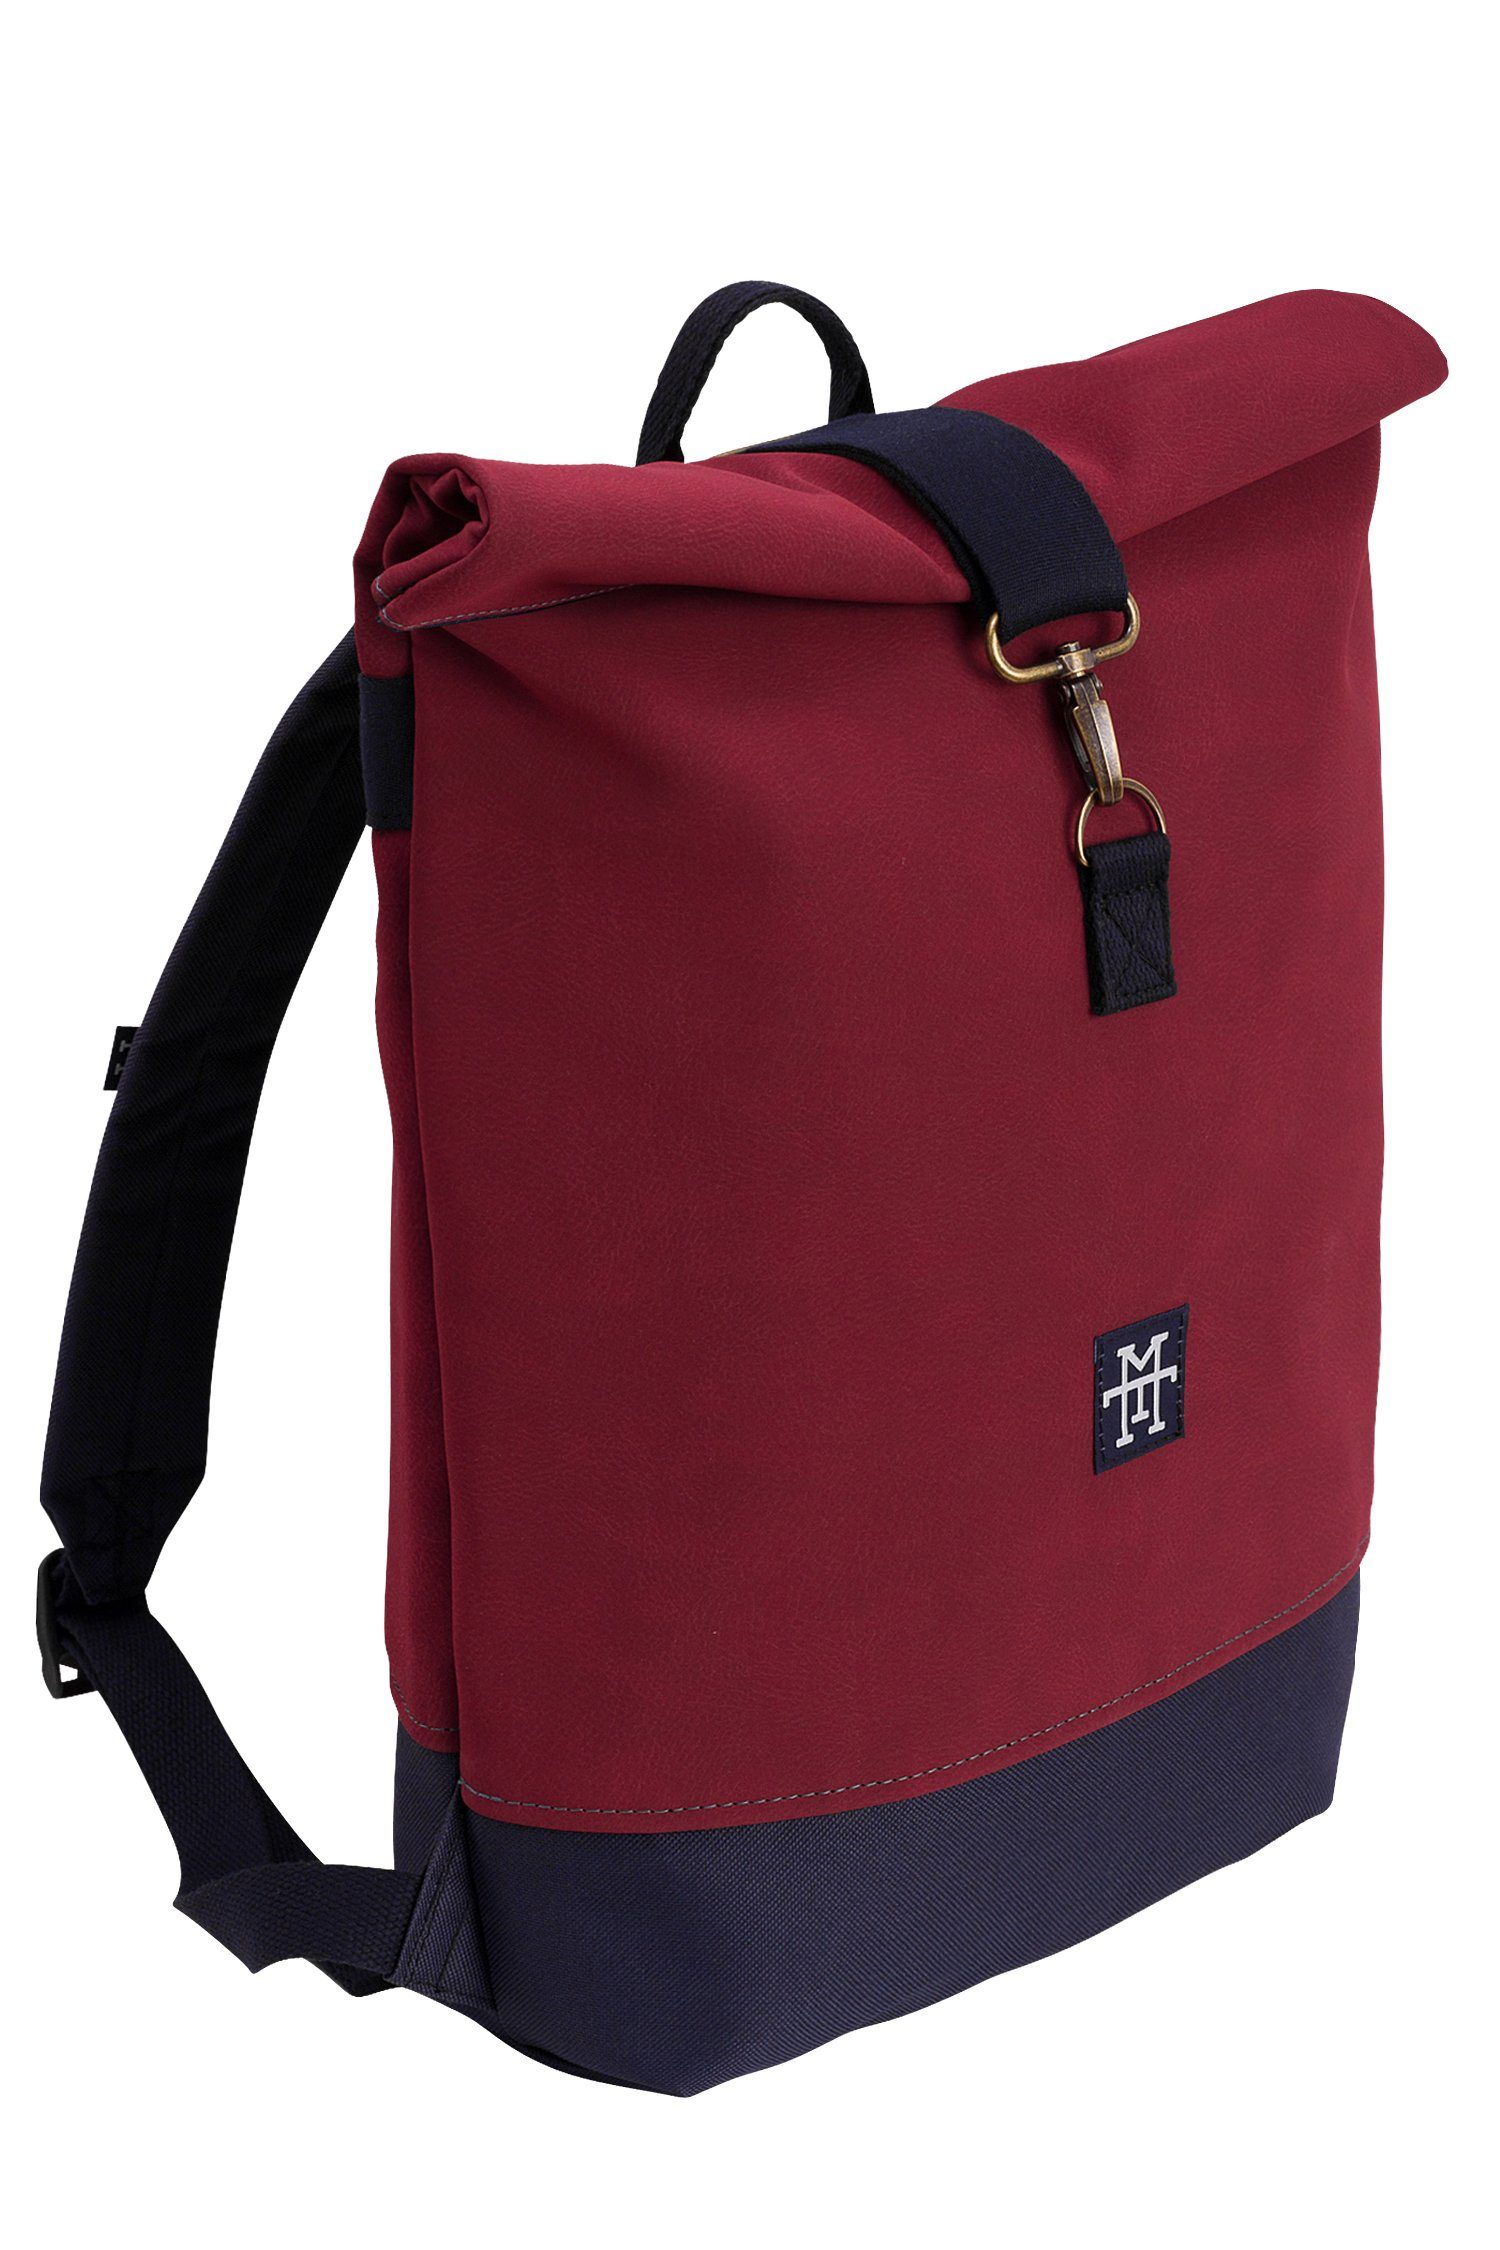 Manufaktur13 Tagesrucksack - Bordeaux Rucksack Backpack Gurte Rollverschluss, wasserdicht/wasserabweisend, Mini mit verstellbare Roll-Top